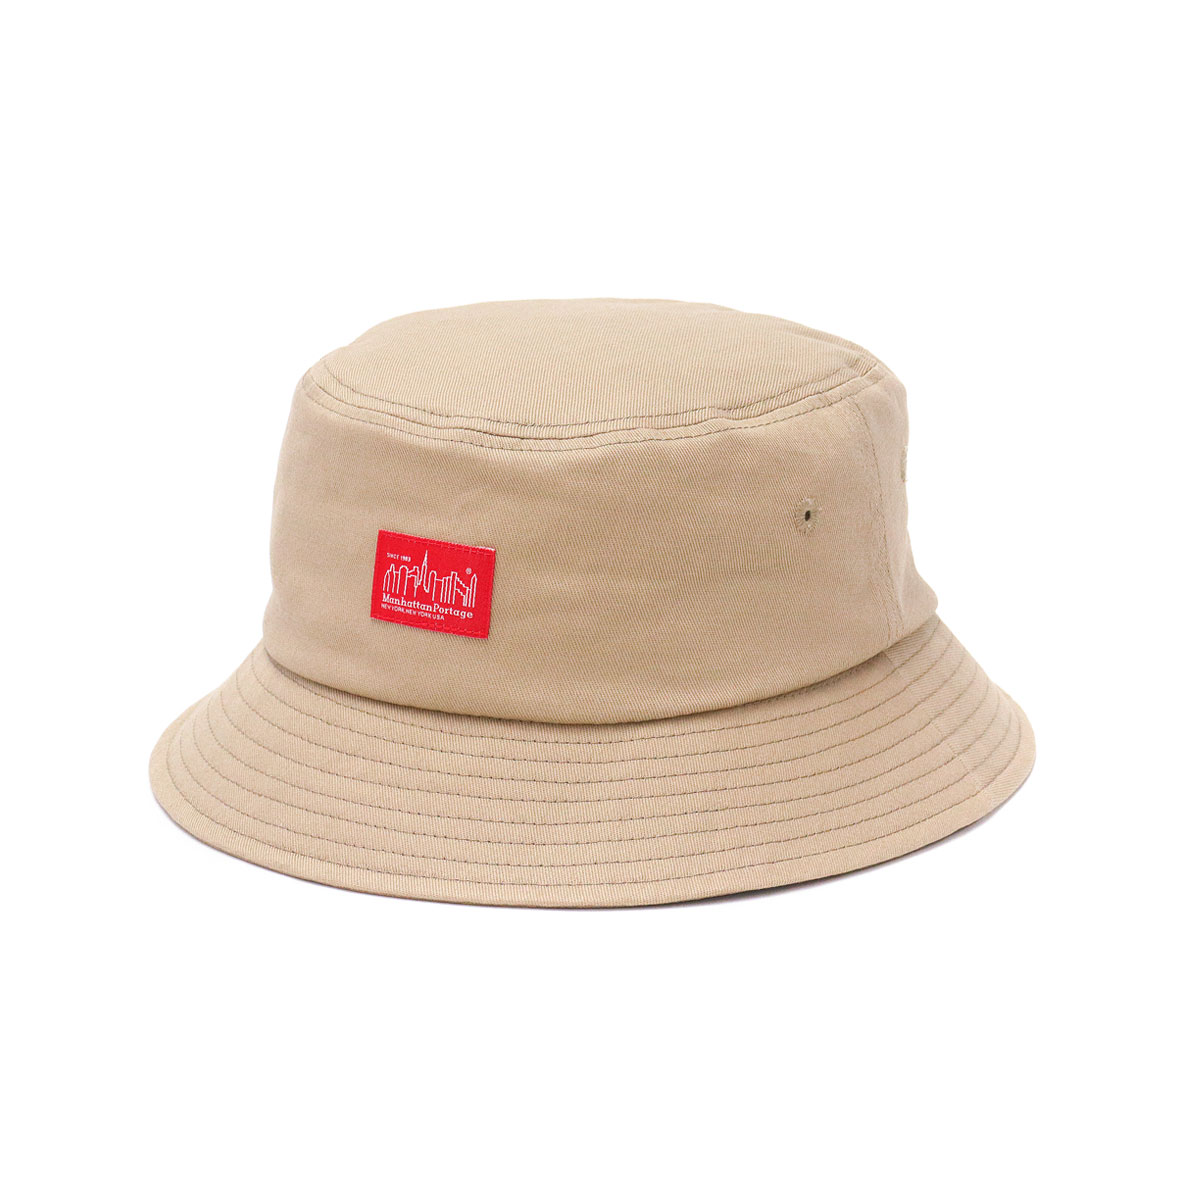 日本正規品 マンハッタンポーテージ 帽子 Manhattan Portage Bucket Hat ...